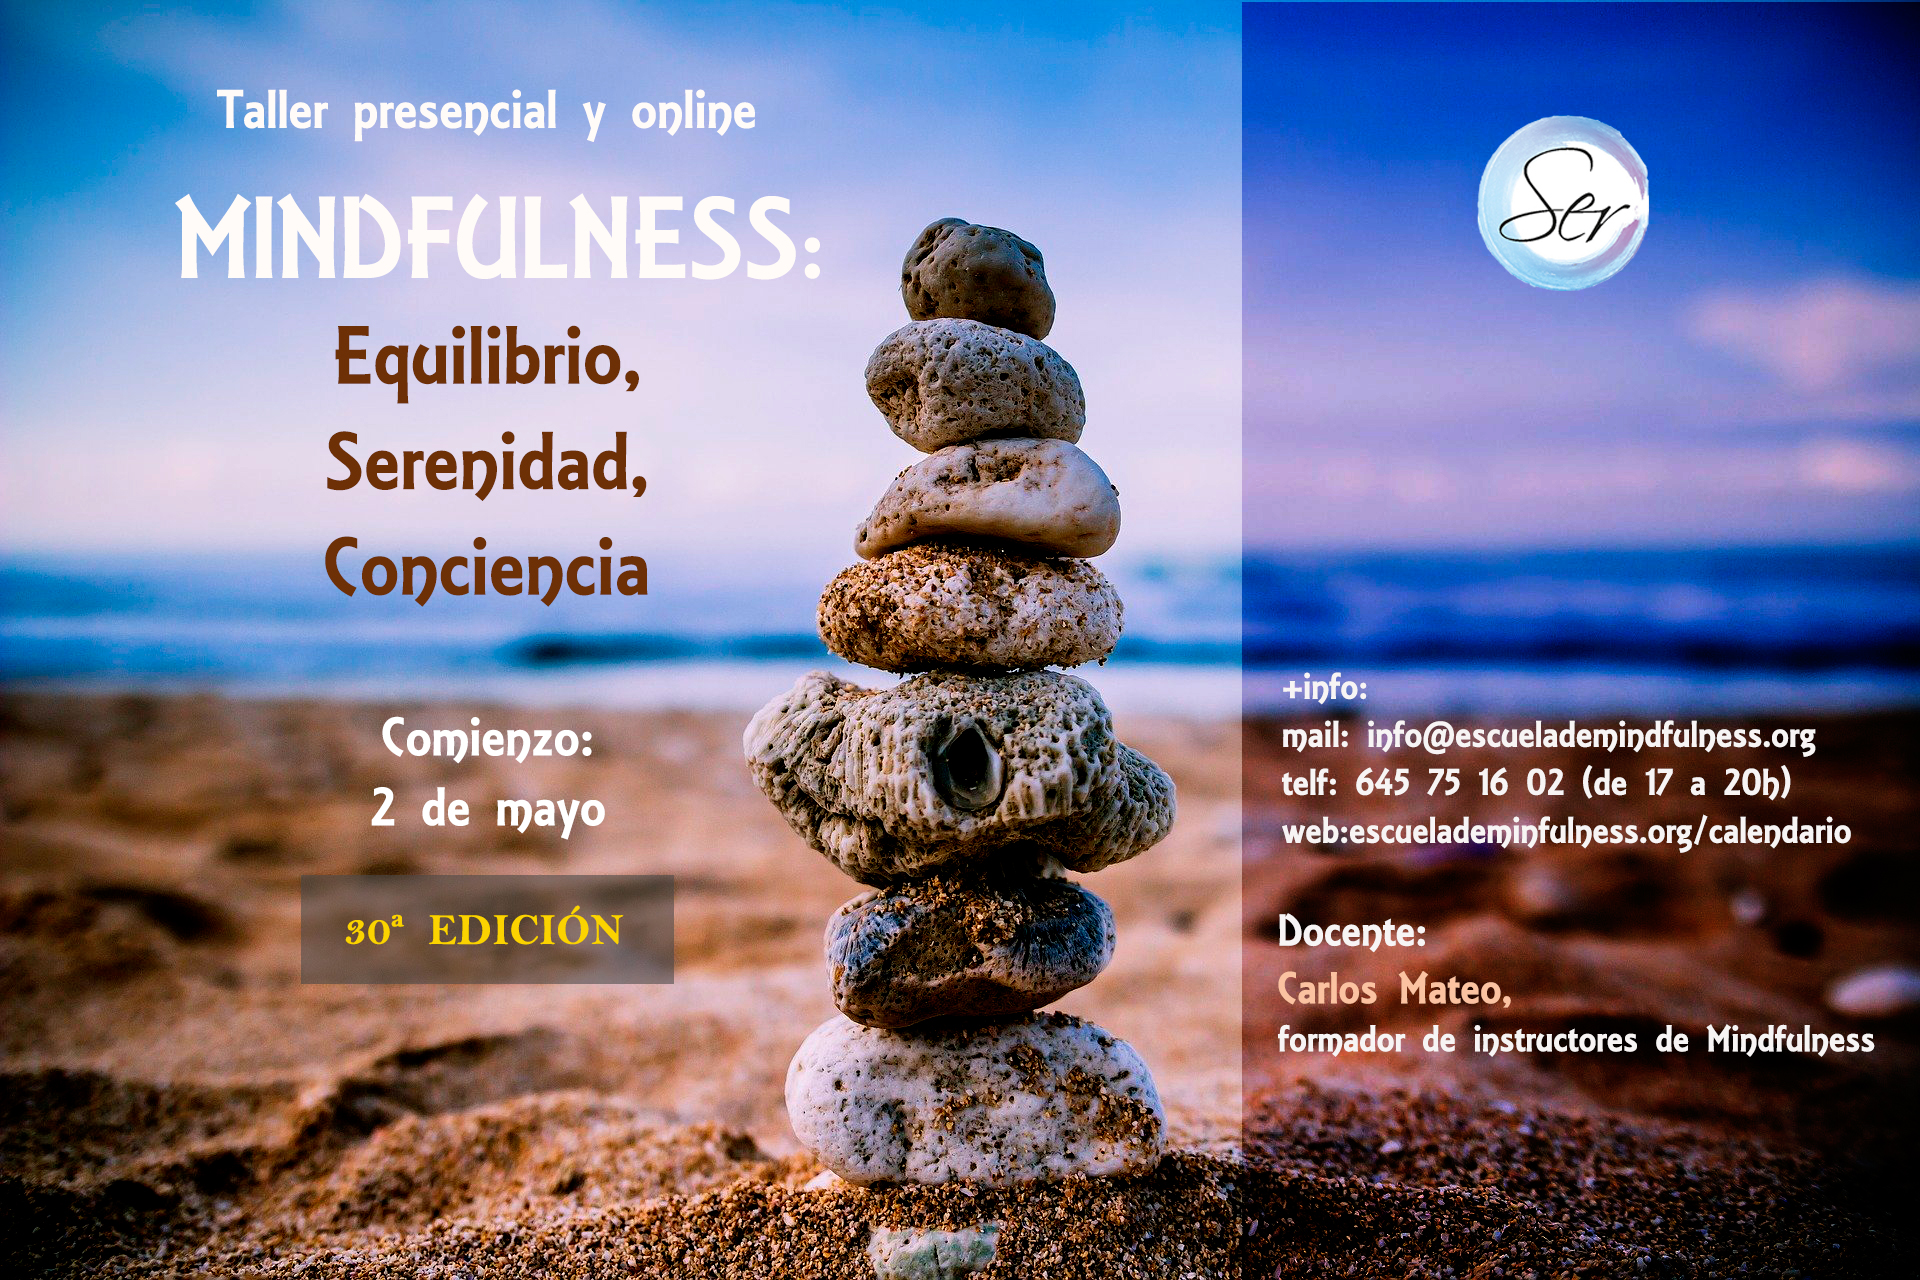 Taller presencial y online de Mindfulness, comienzo 2 de mayo 2022 – 30ª EDICIÓN